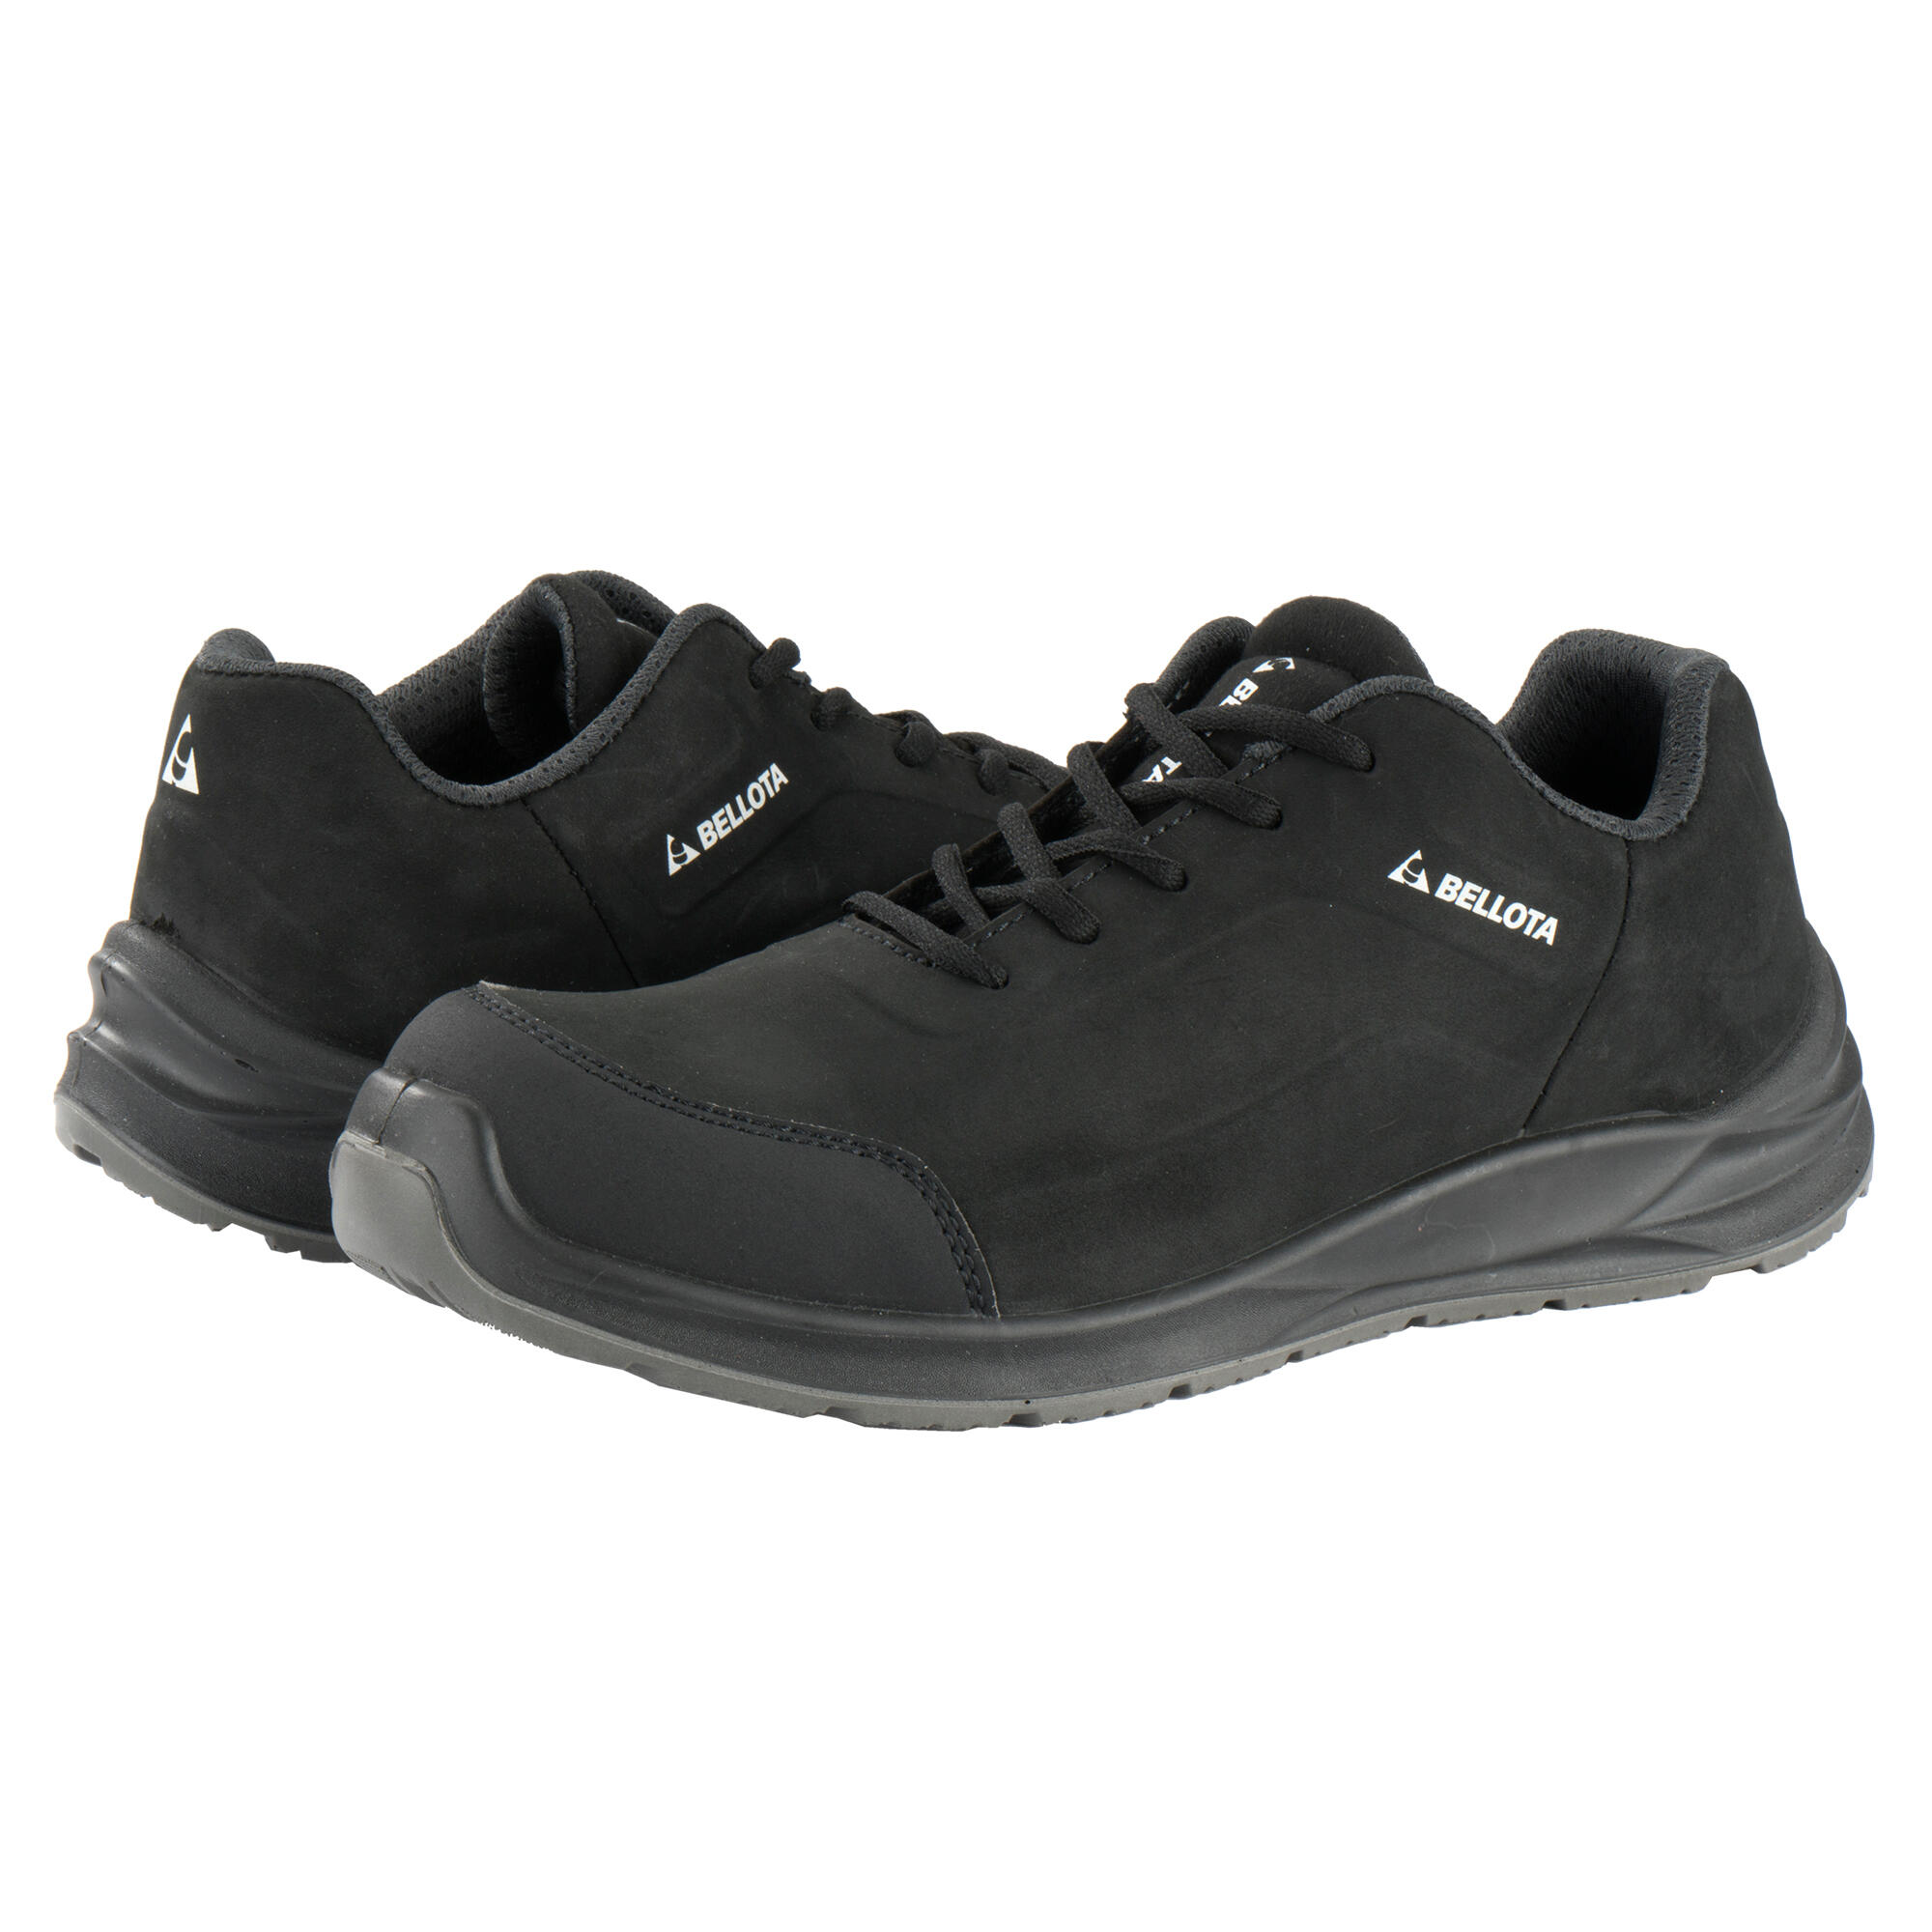 Zapatos seguridad s3 bellota flex carbón negro t42